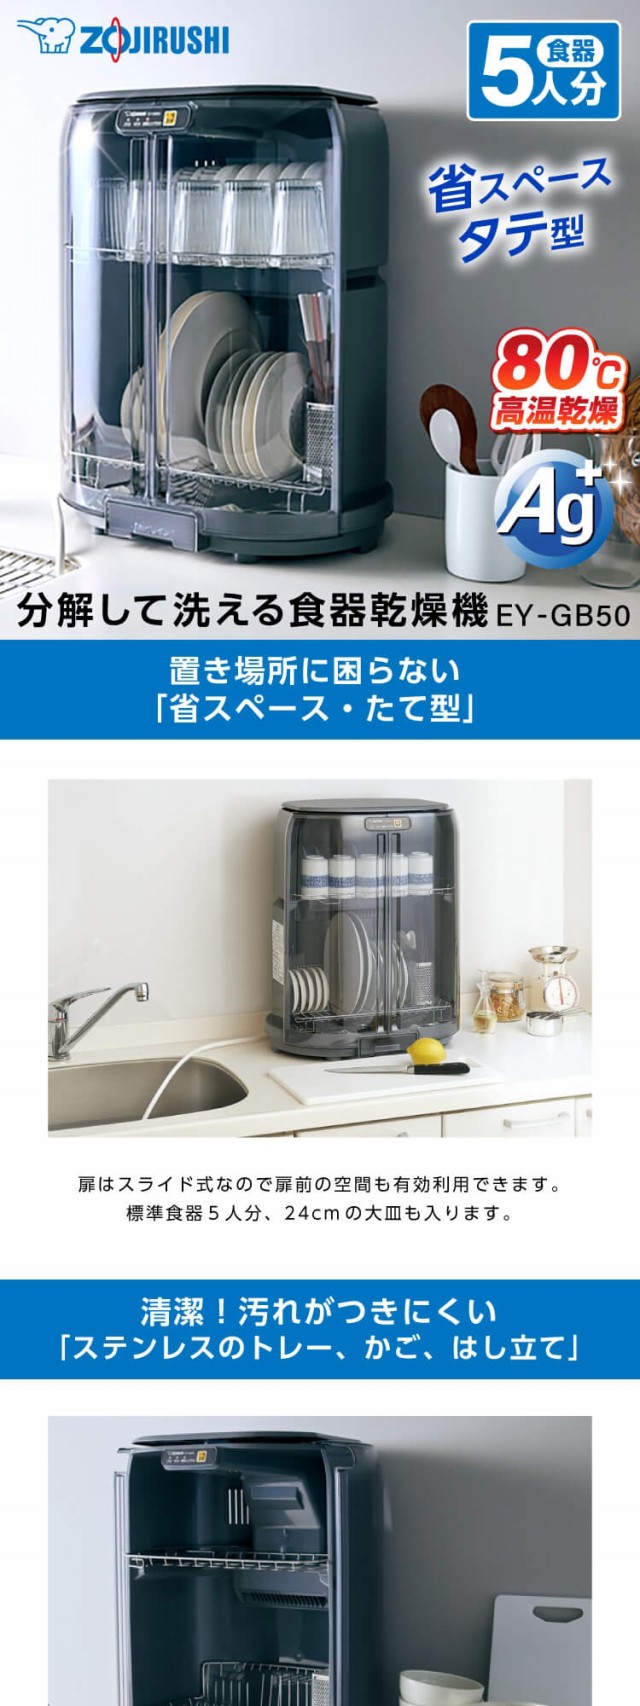 象印 EY-GB50-HA グレー [ 食器乾燥器 ] EYGB50HA らくらく 清潔 省 